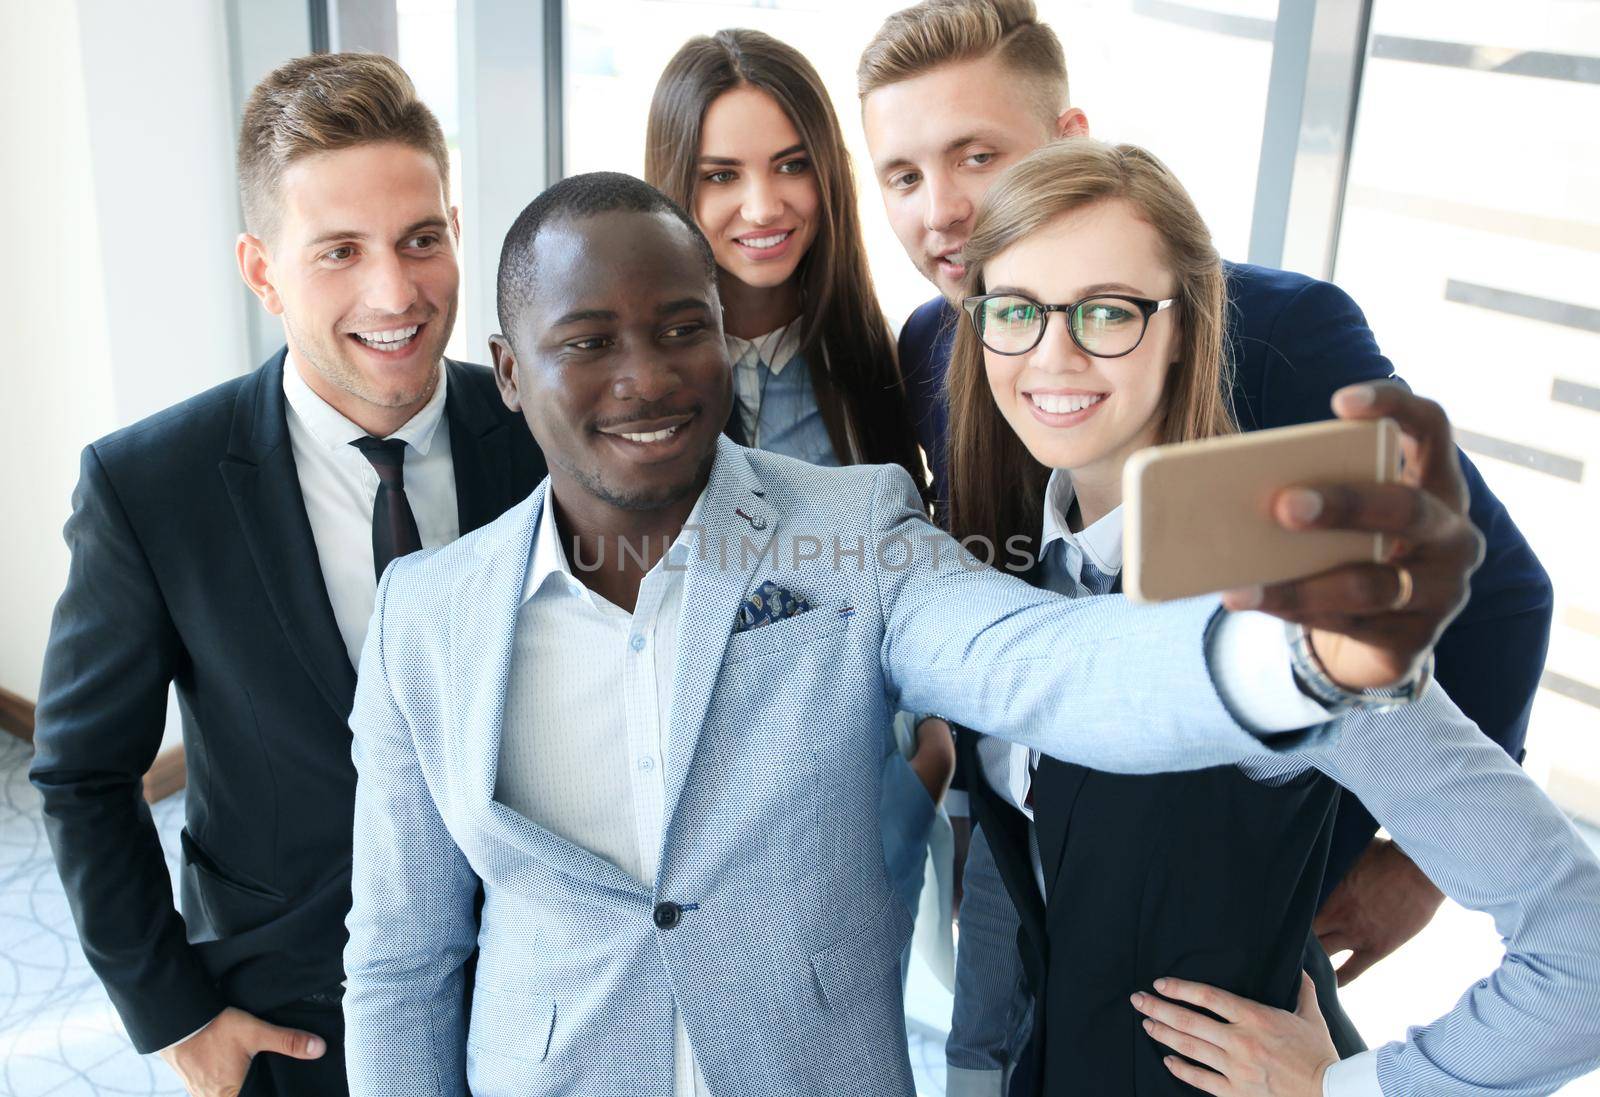 People taking selfie at business meeting